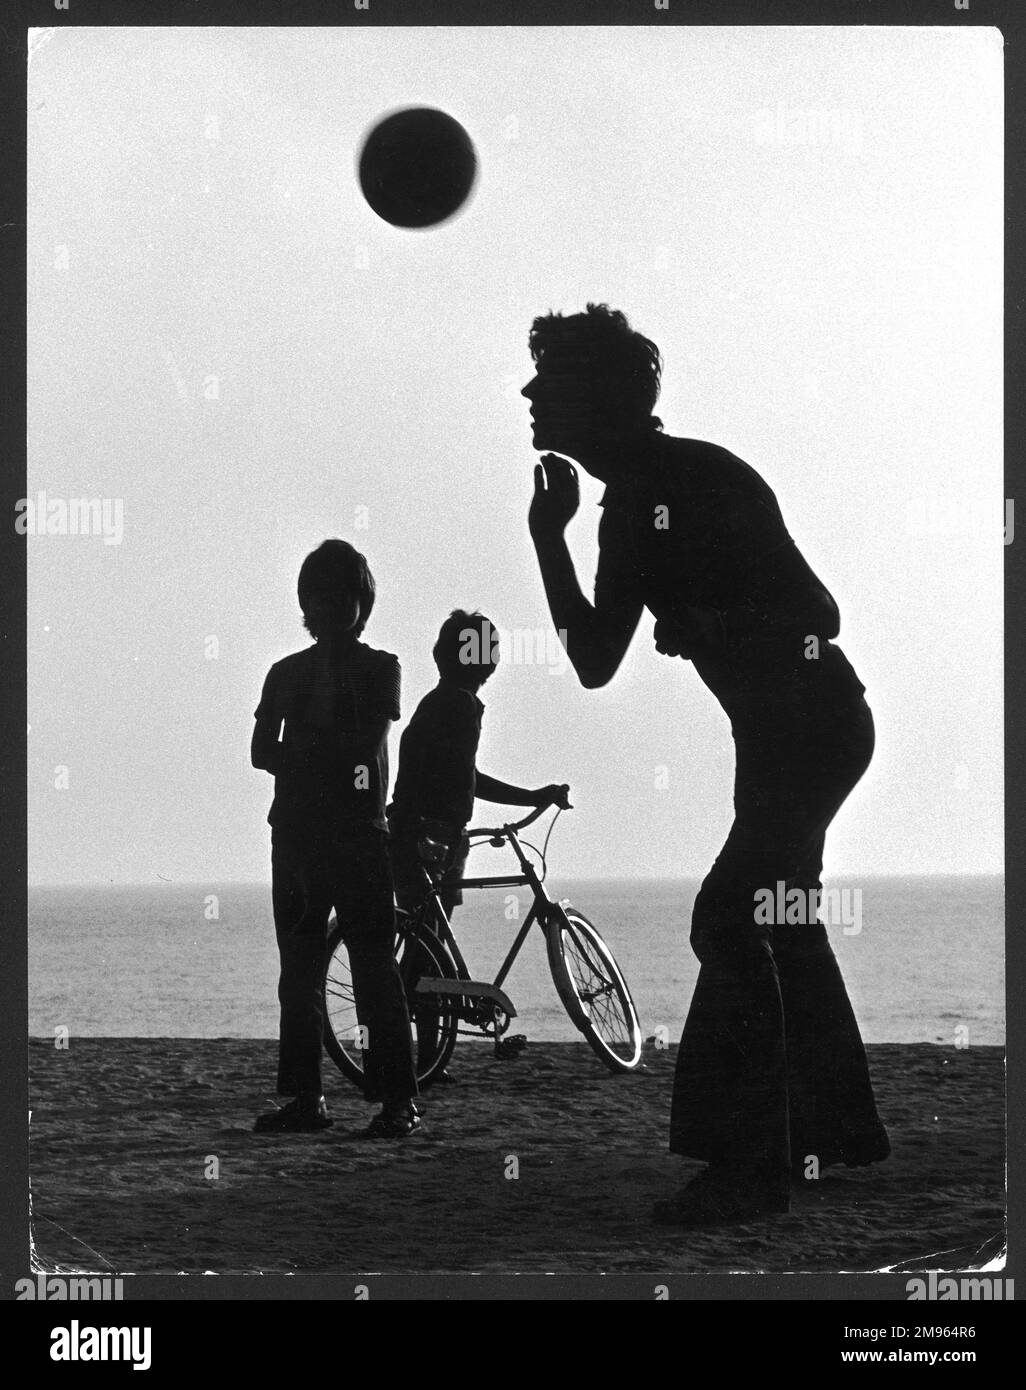 Silhouette di un adolescente che dirige un calcio su una spiaggia, guardato da due ragazzi più piccoli, uno che tiene la bicicletta. Foto Stock